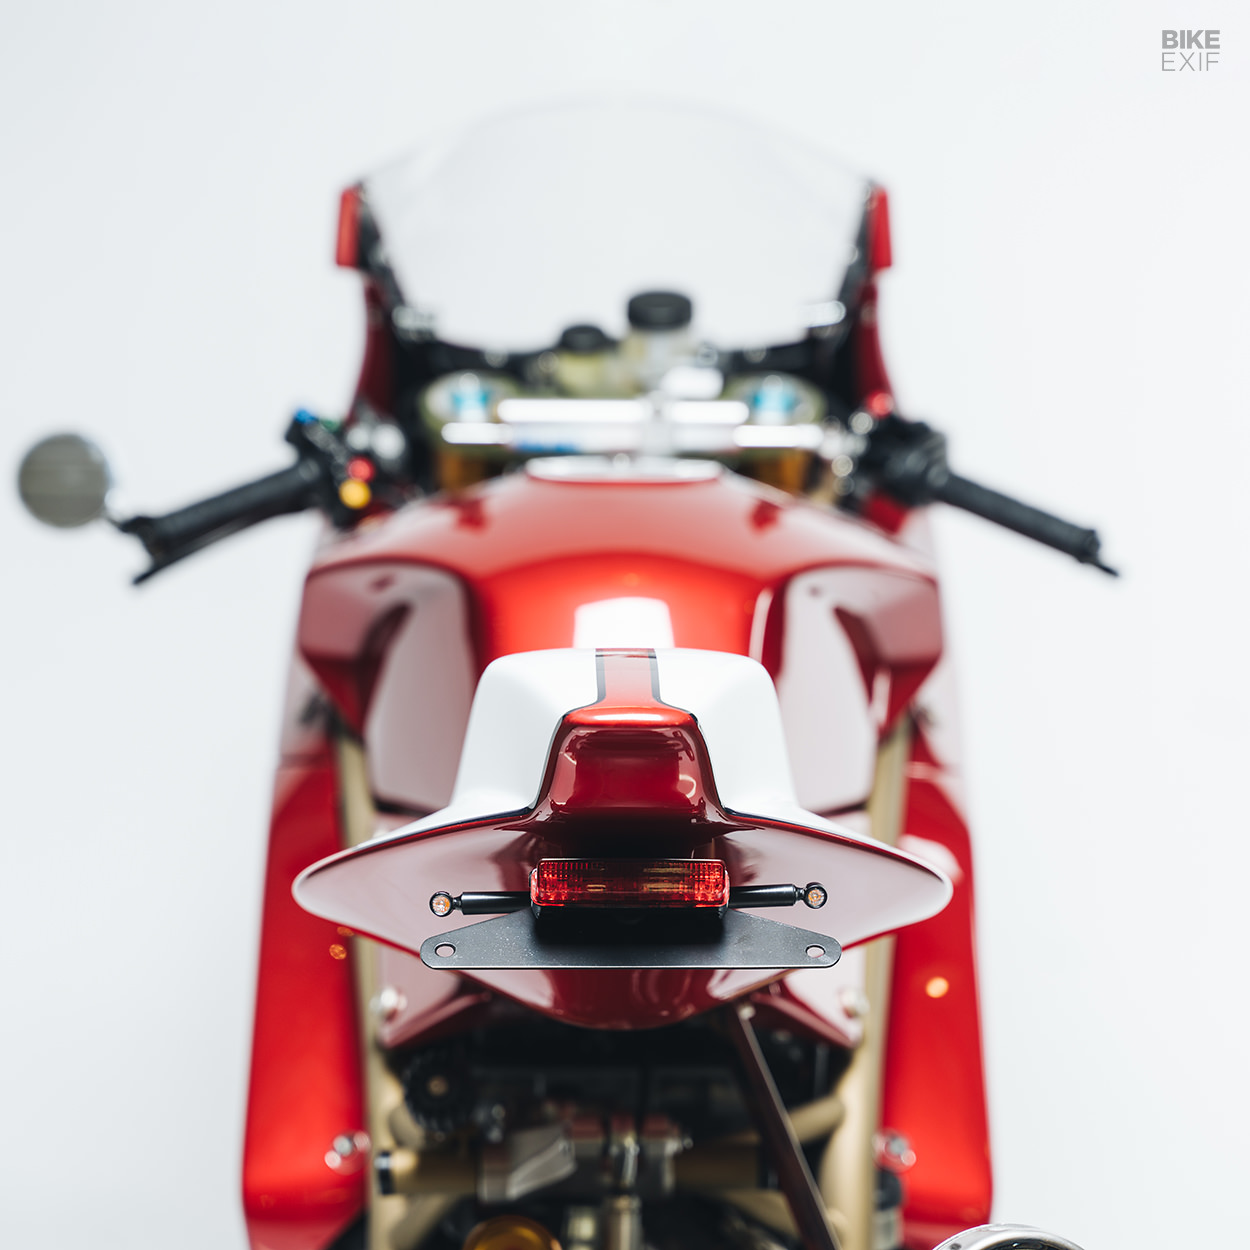 Ducati SBK custom superbike by Walt Siegl